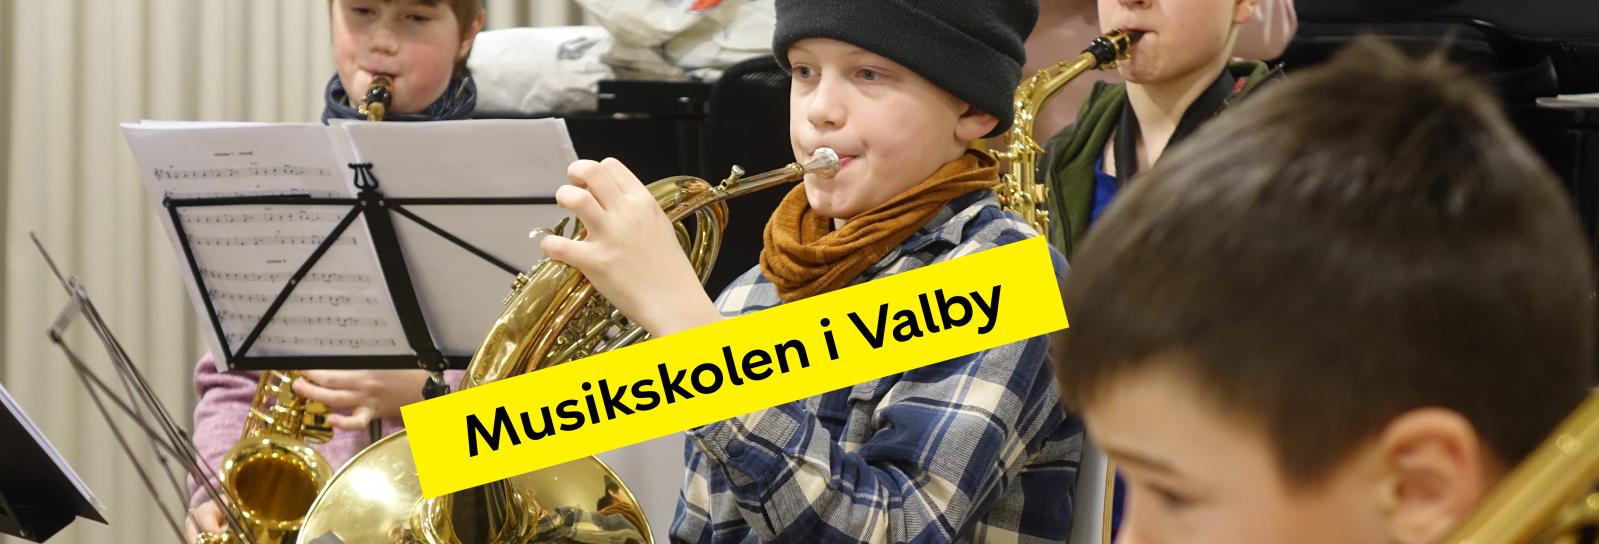 Musikskolen i Valby